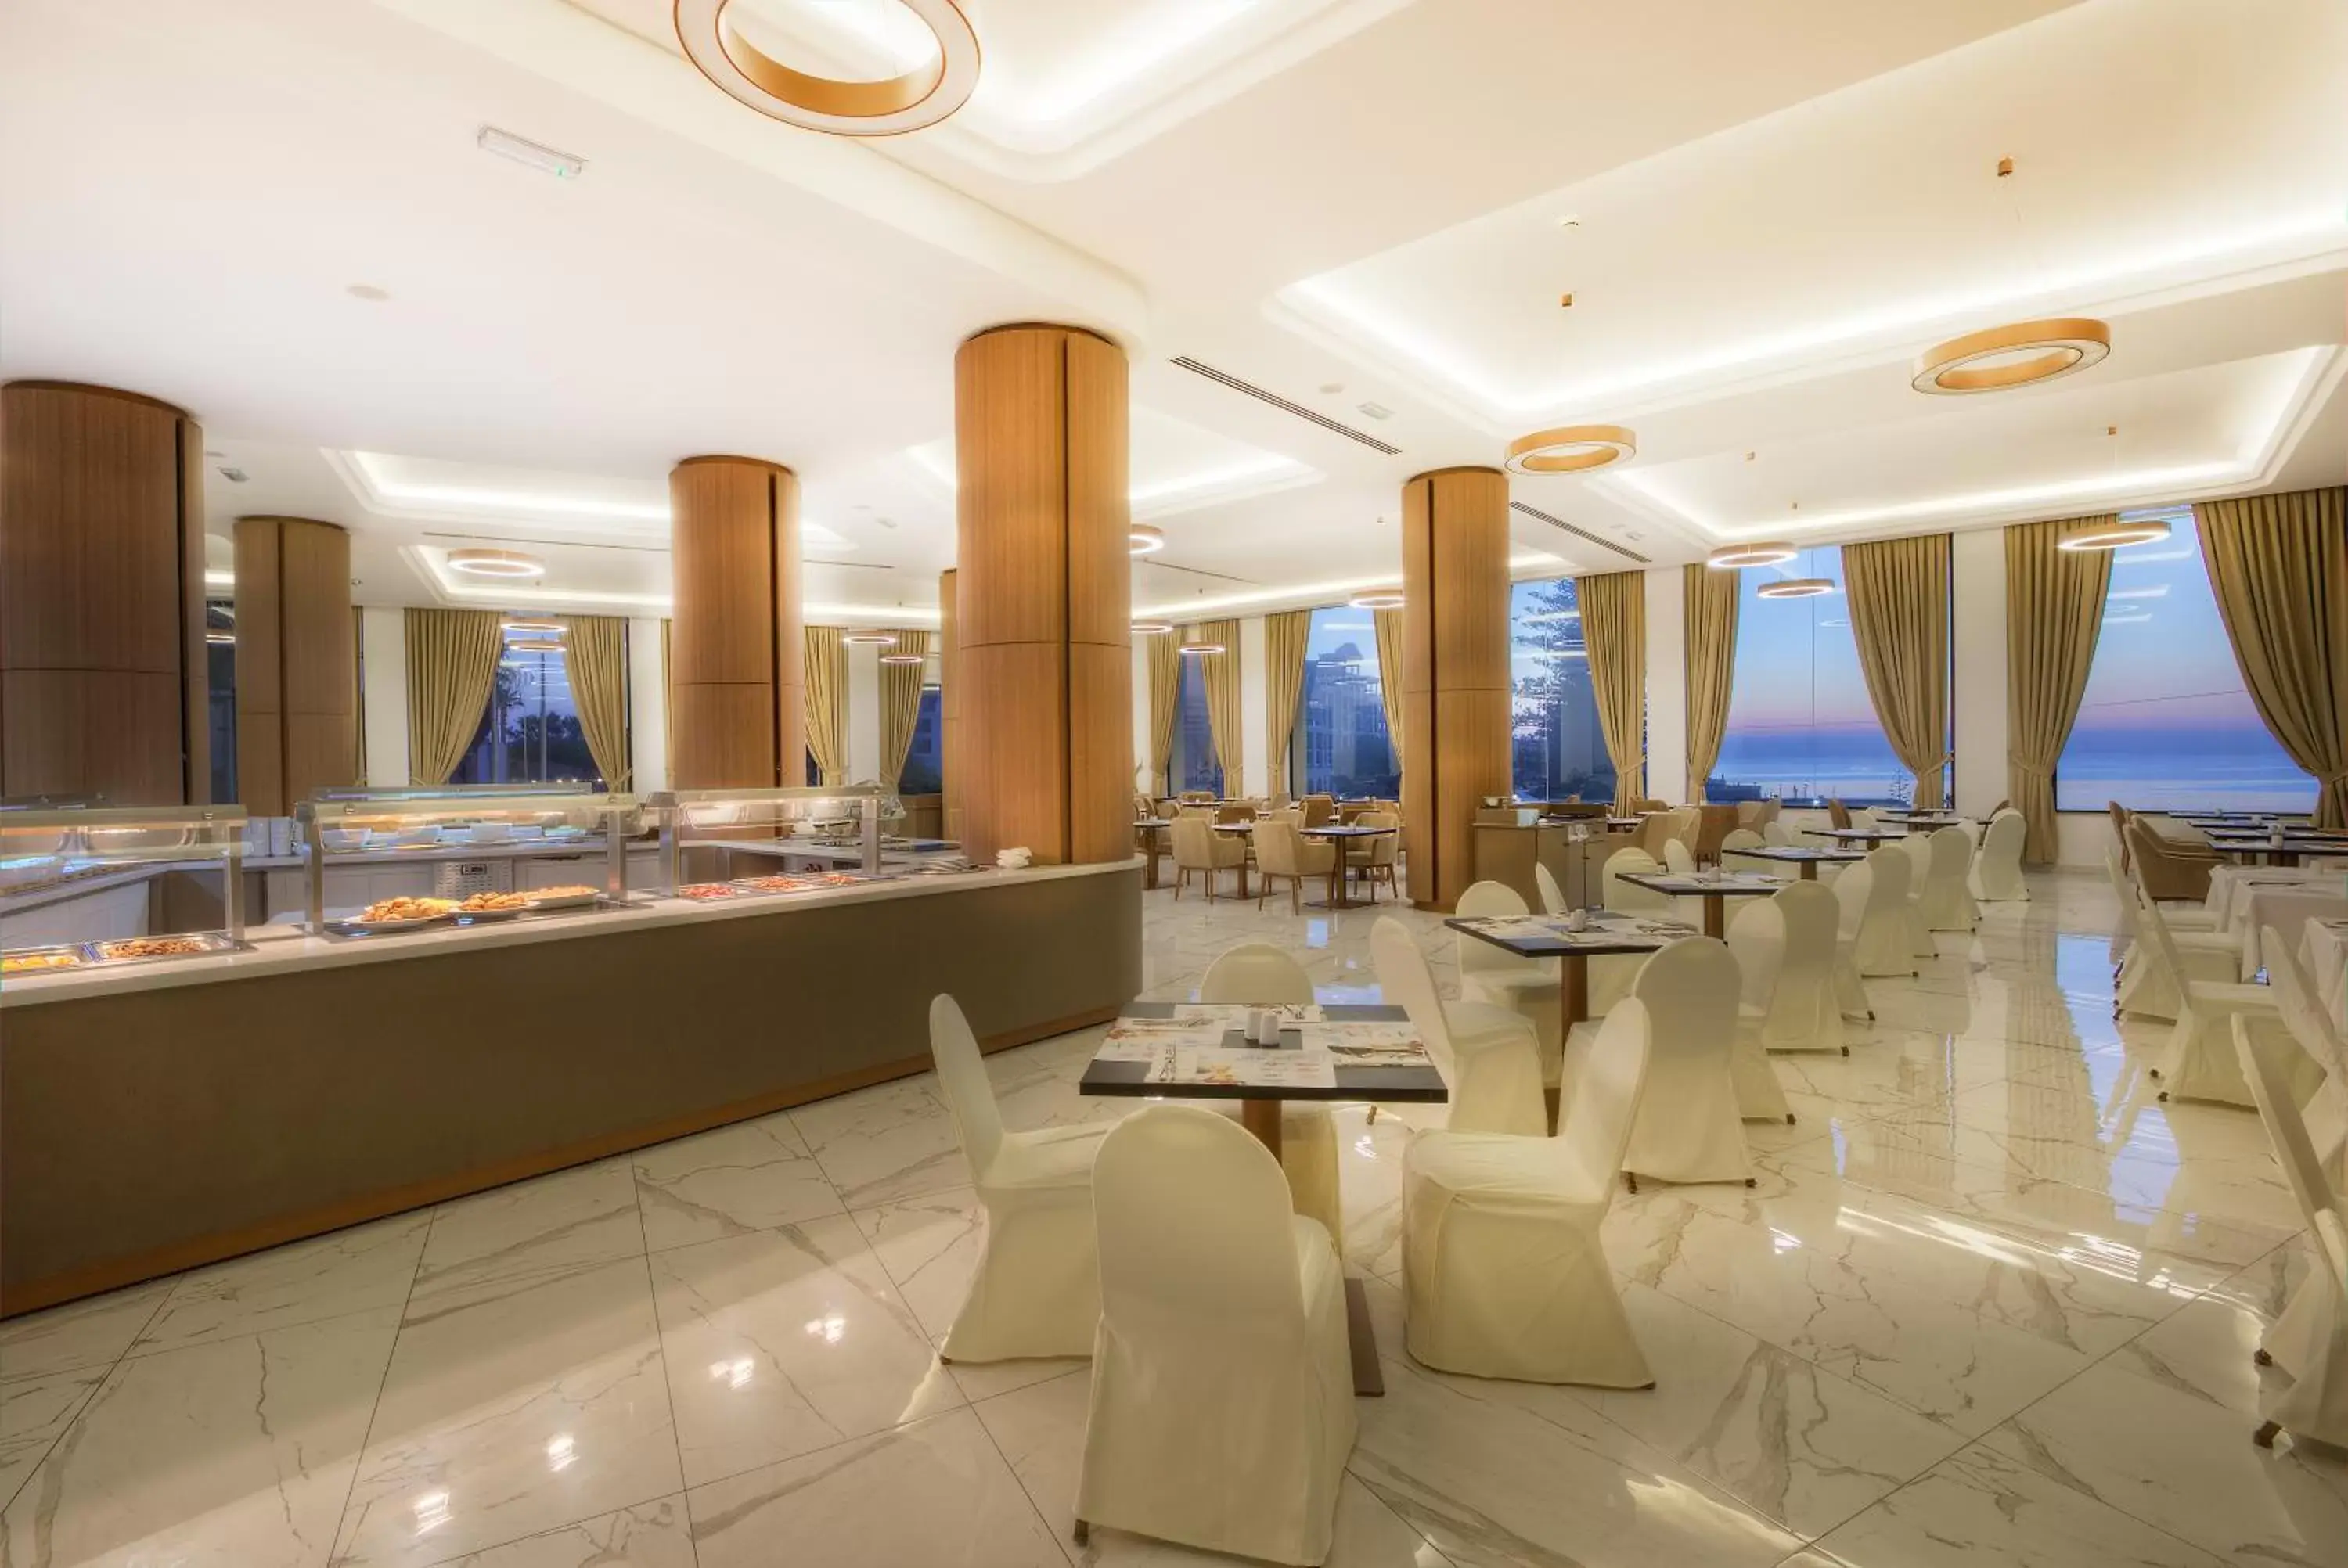 Restaurant/places to eat in Golden Tulip Vivaldi Hotel